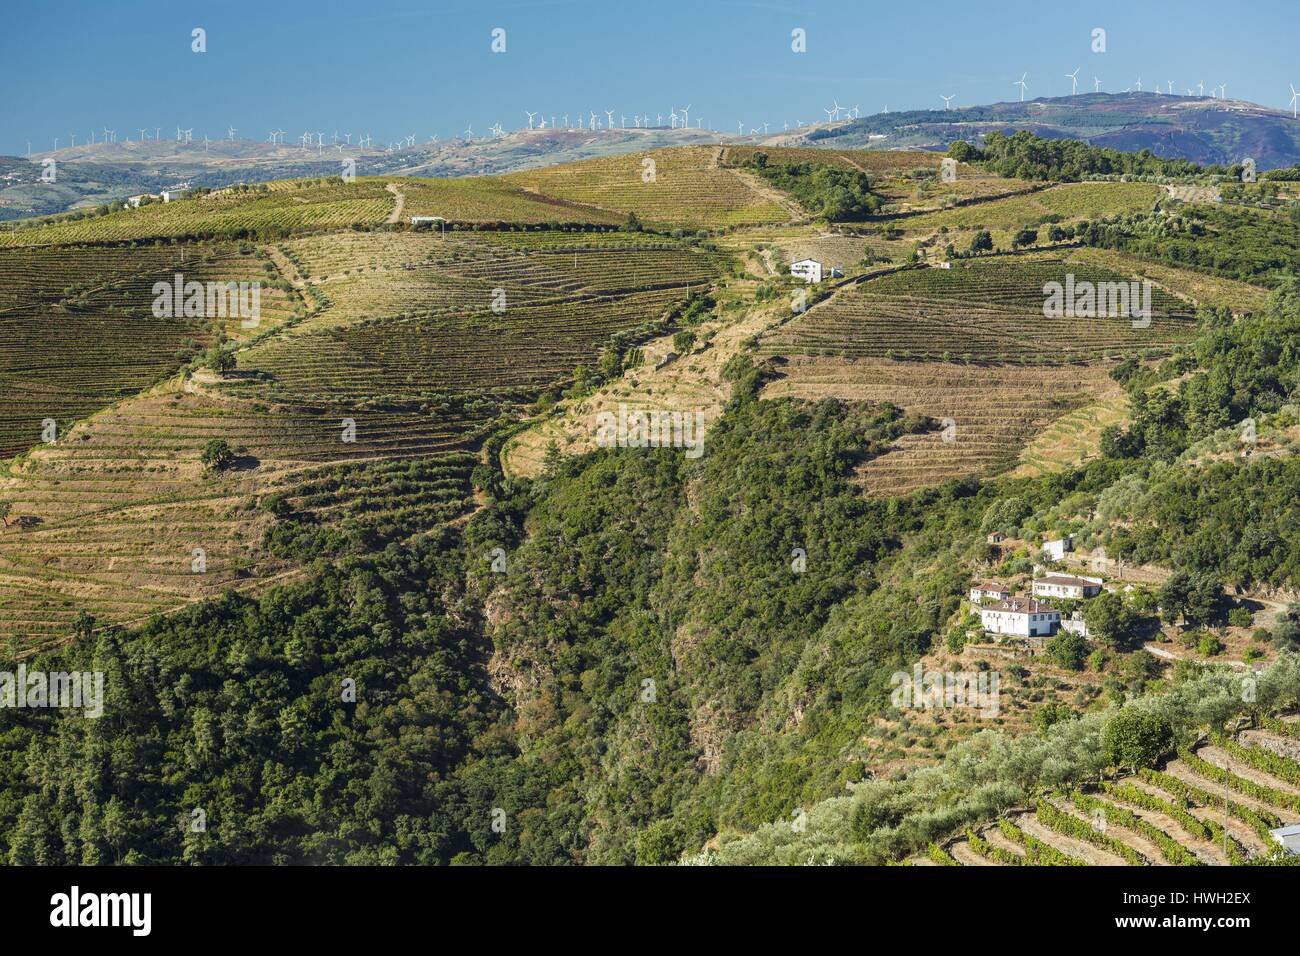 Le Portugal, la Vallée du Douro et son vignoble classé Patrimoine Mondial de l'UNESCO, Galafura, vue d'un parc éolien Banque D'Images